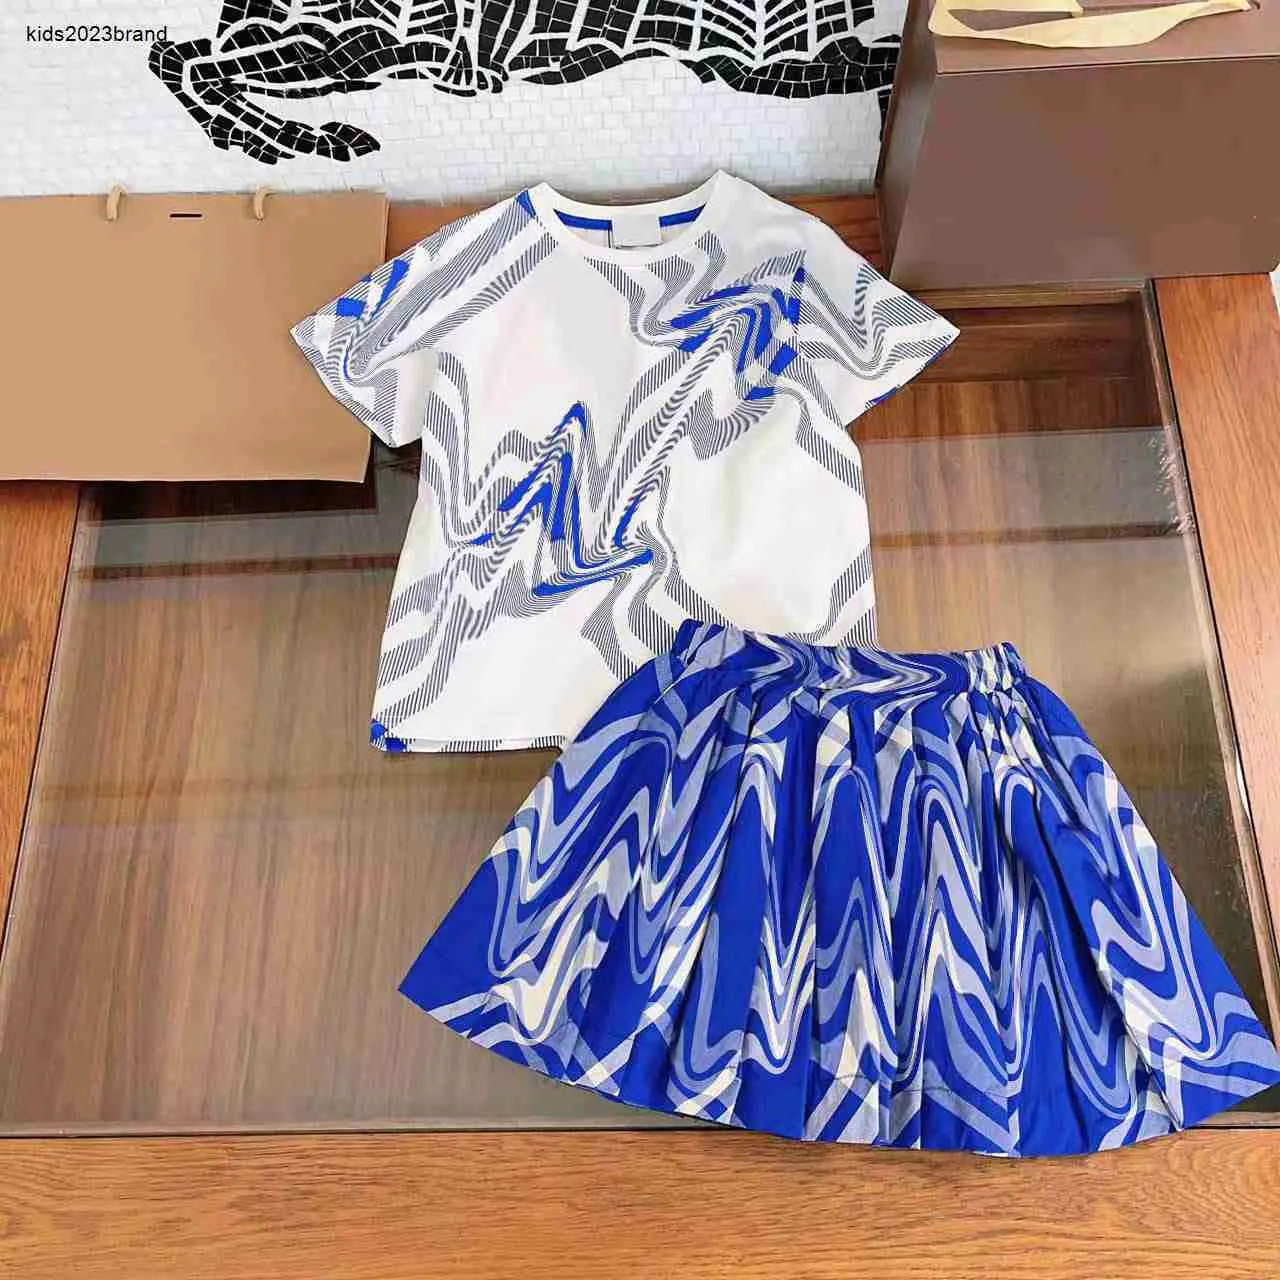 Nuovi set di vestiti per bambini tute per bambini vestiti per neonata Taglia 100-160 CM Stampa a righe blu Camicia a maniche corte e gonna corta color kaki 24Feb20